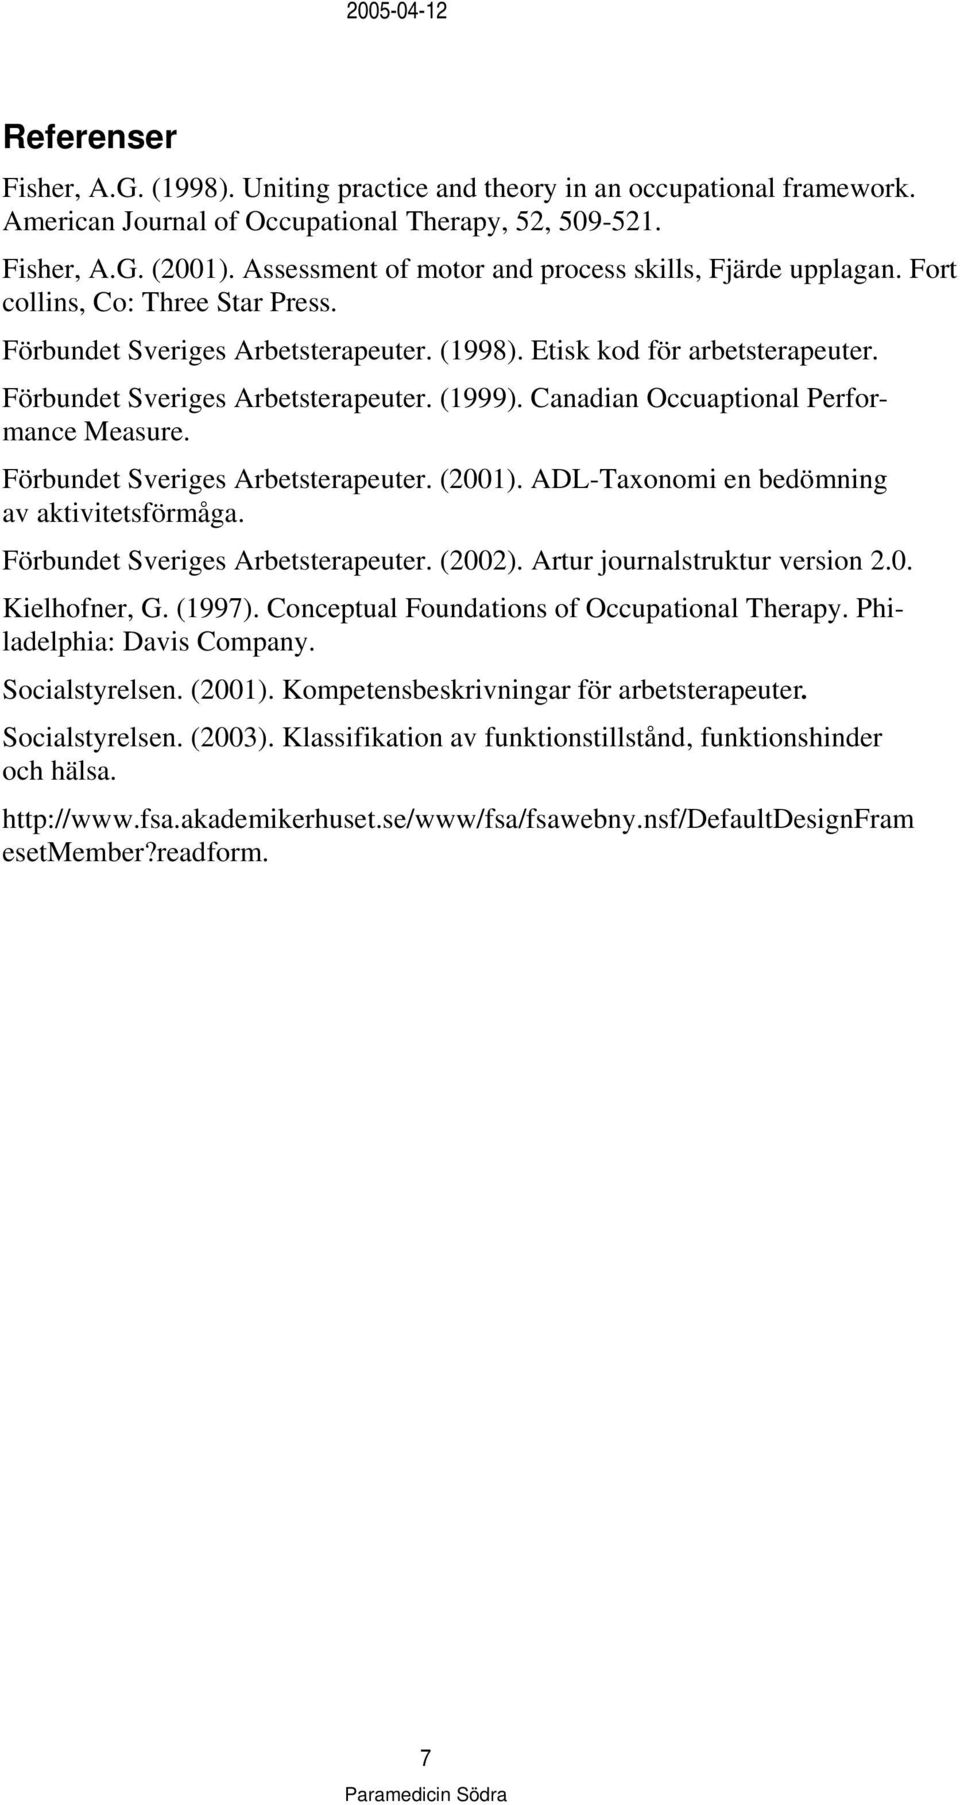 Förbundet Sveriges Arbetsterapeuter. (1999). Canadian Occuaptional Performance Measure. Förbundet Sveriges Arbetsterapeuter. (2001). ADL-Taxonomi en bedömning av aktivitetsförmåga.